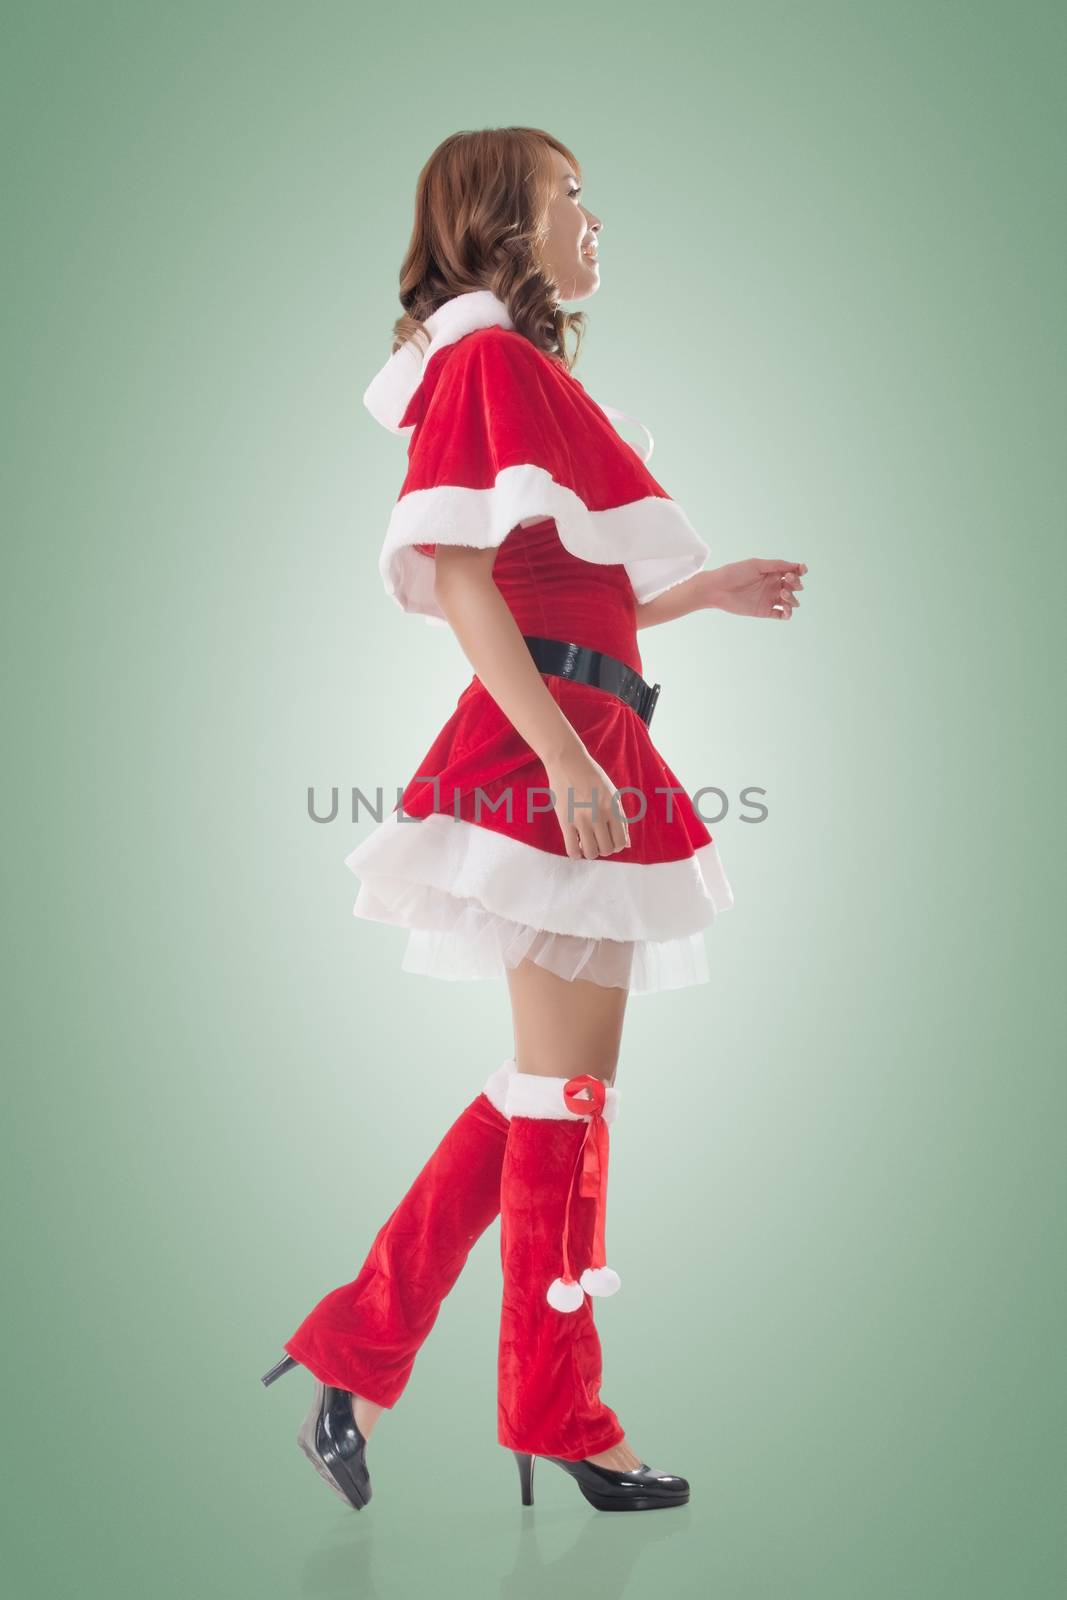 Asian Christmas girl walk, full length portrait. Side view.